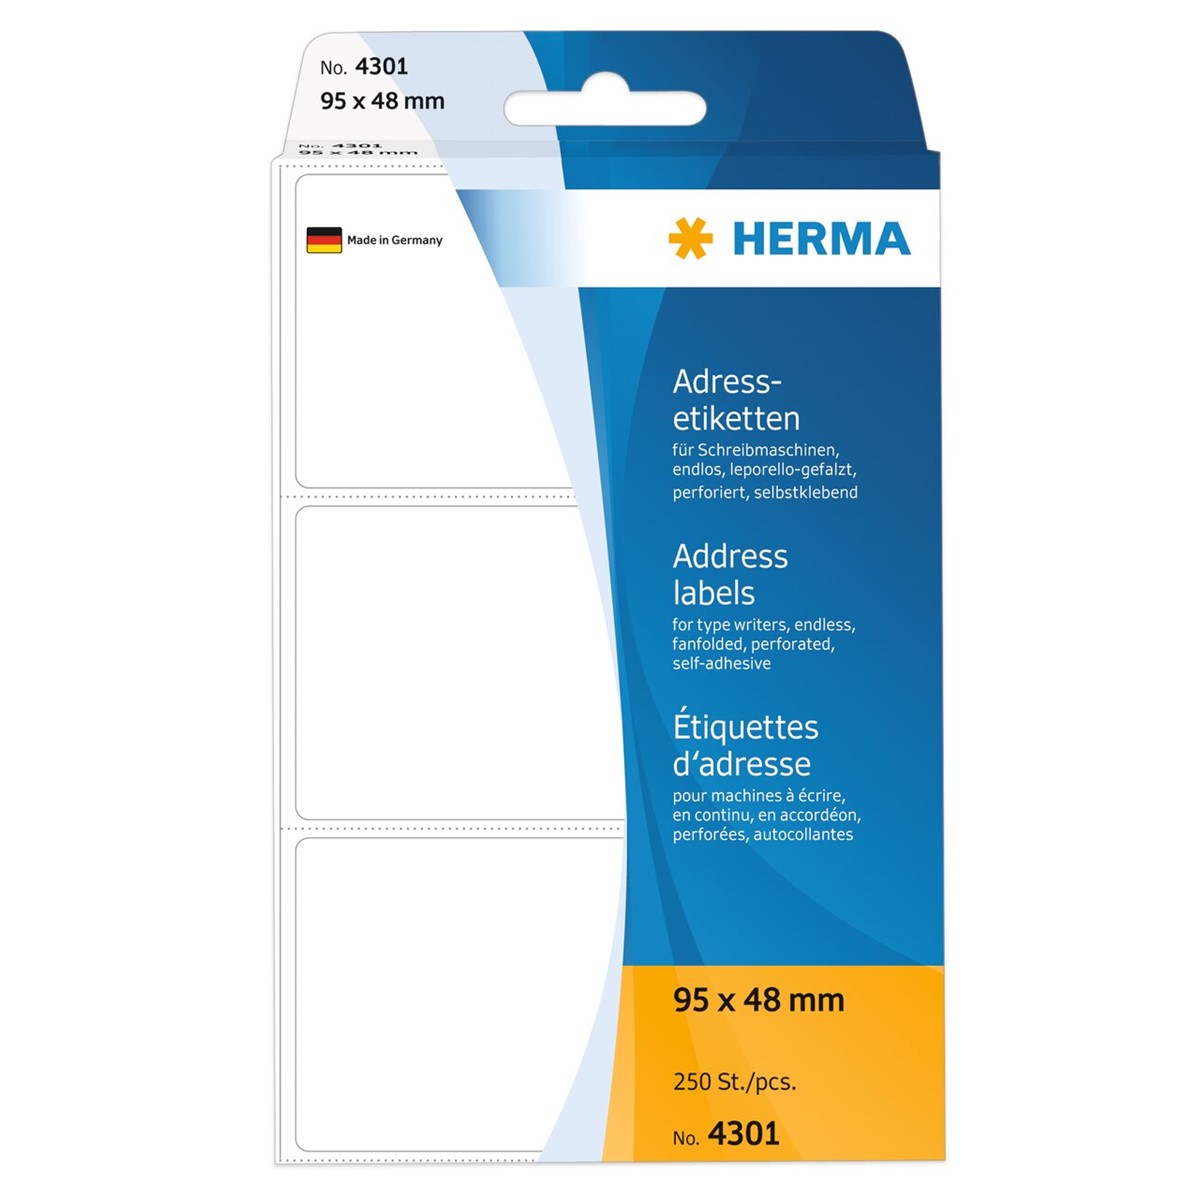 Herma - Adreßetiketten leporello 95 x 48 mm - permanent haftend - weiß - 250 Stück